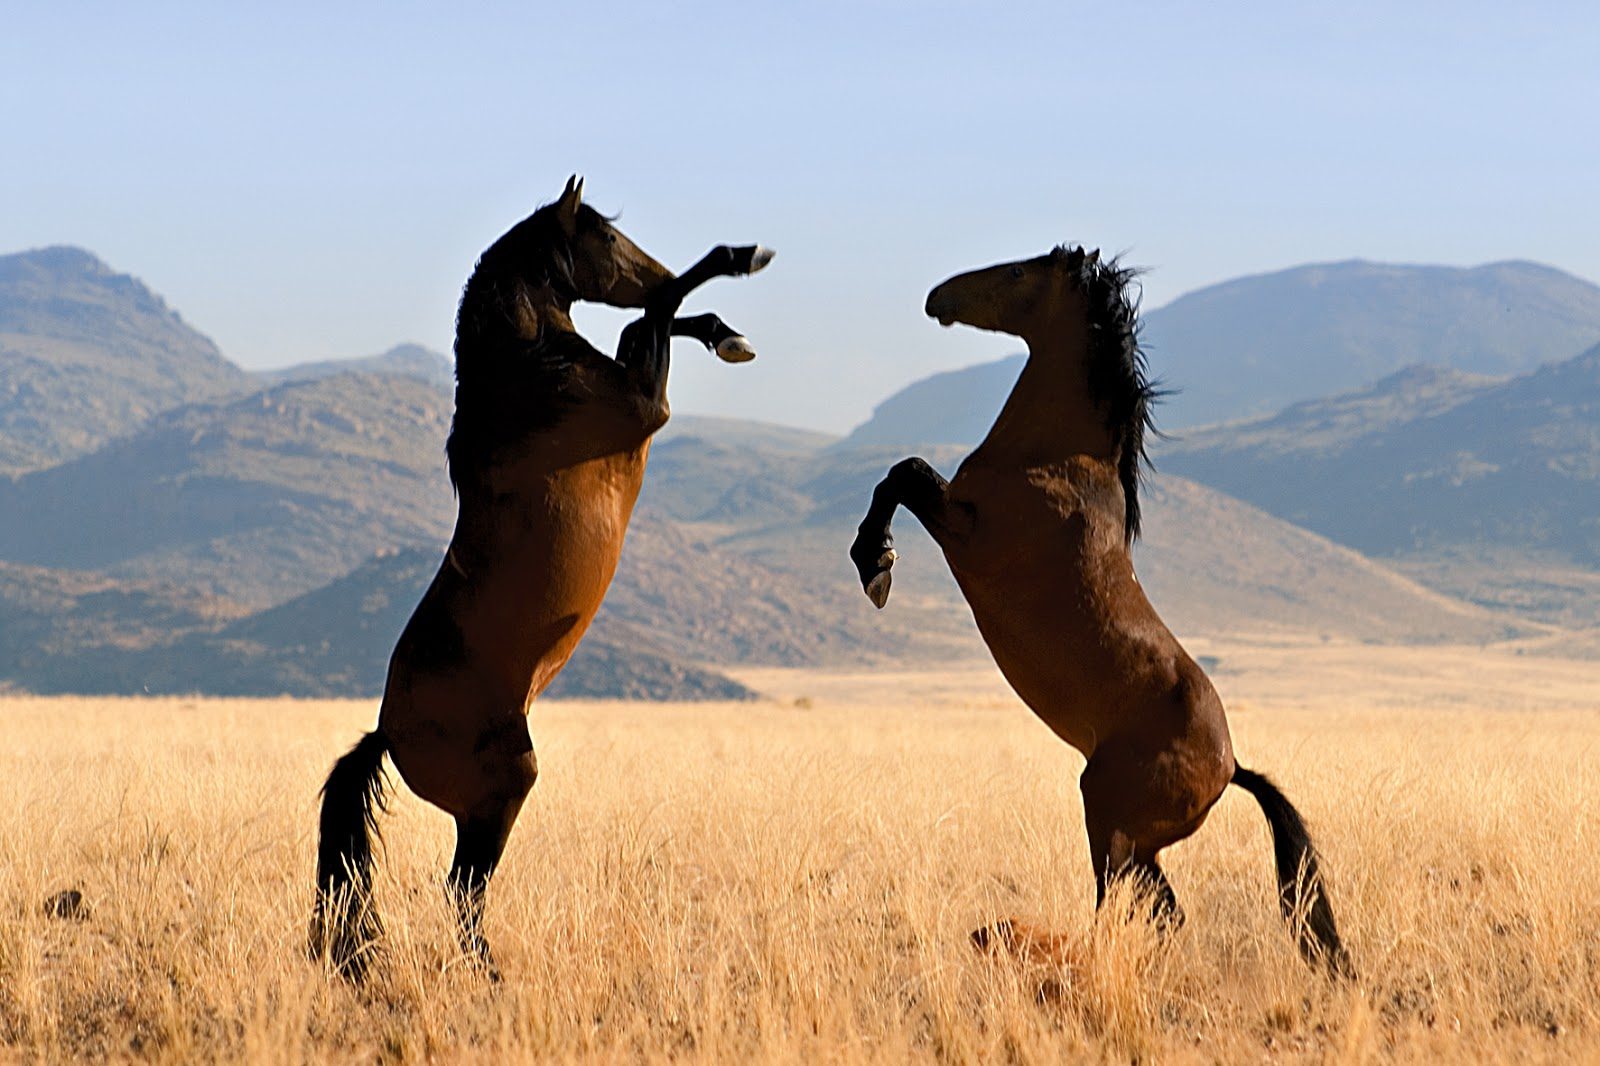 Caballos Mustang salvajes